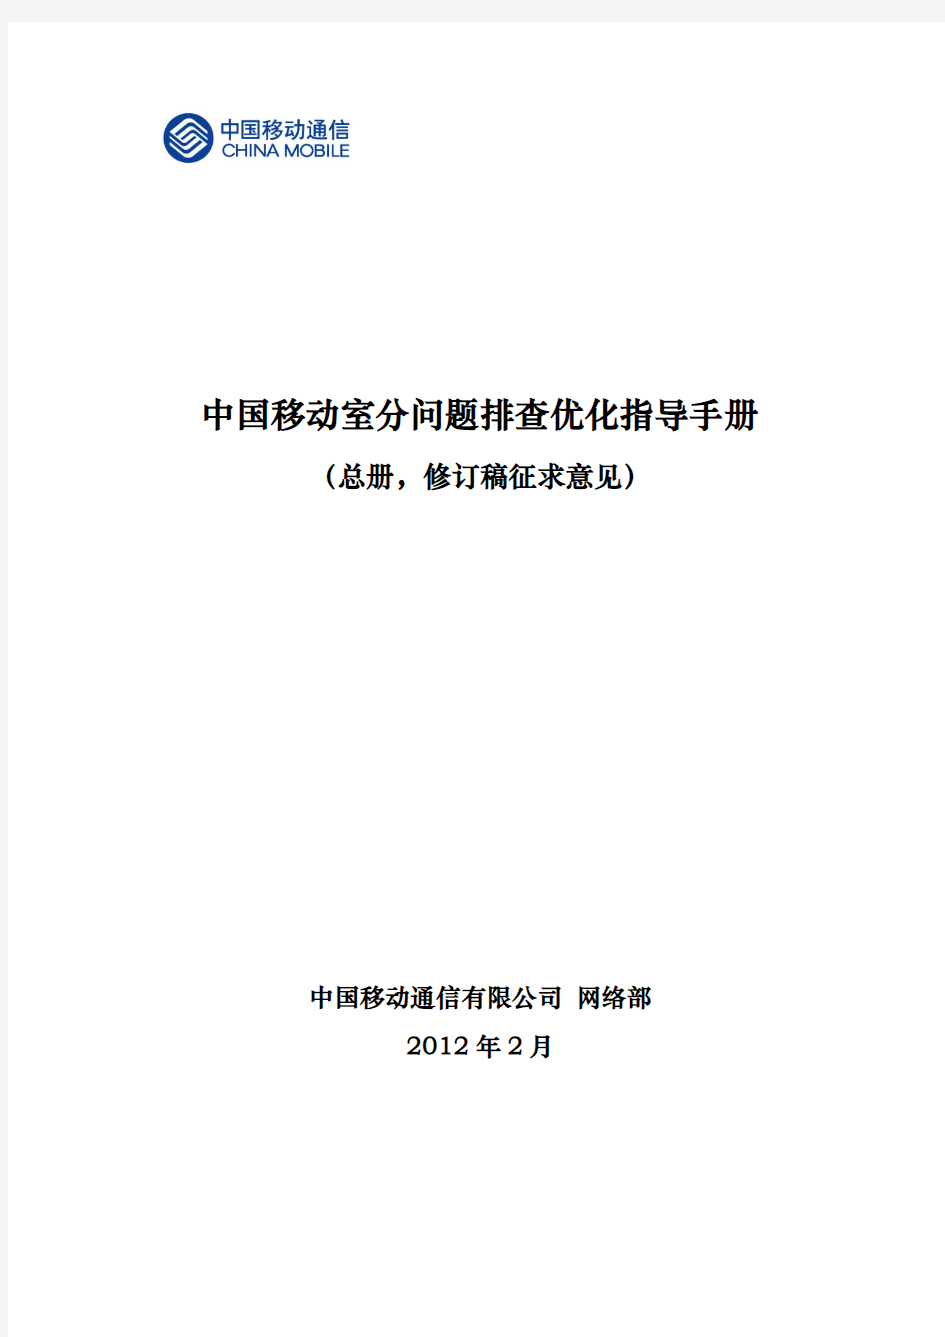 1-中国移动室分问题排查优化指导手册(总册 征求意见)